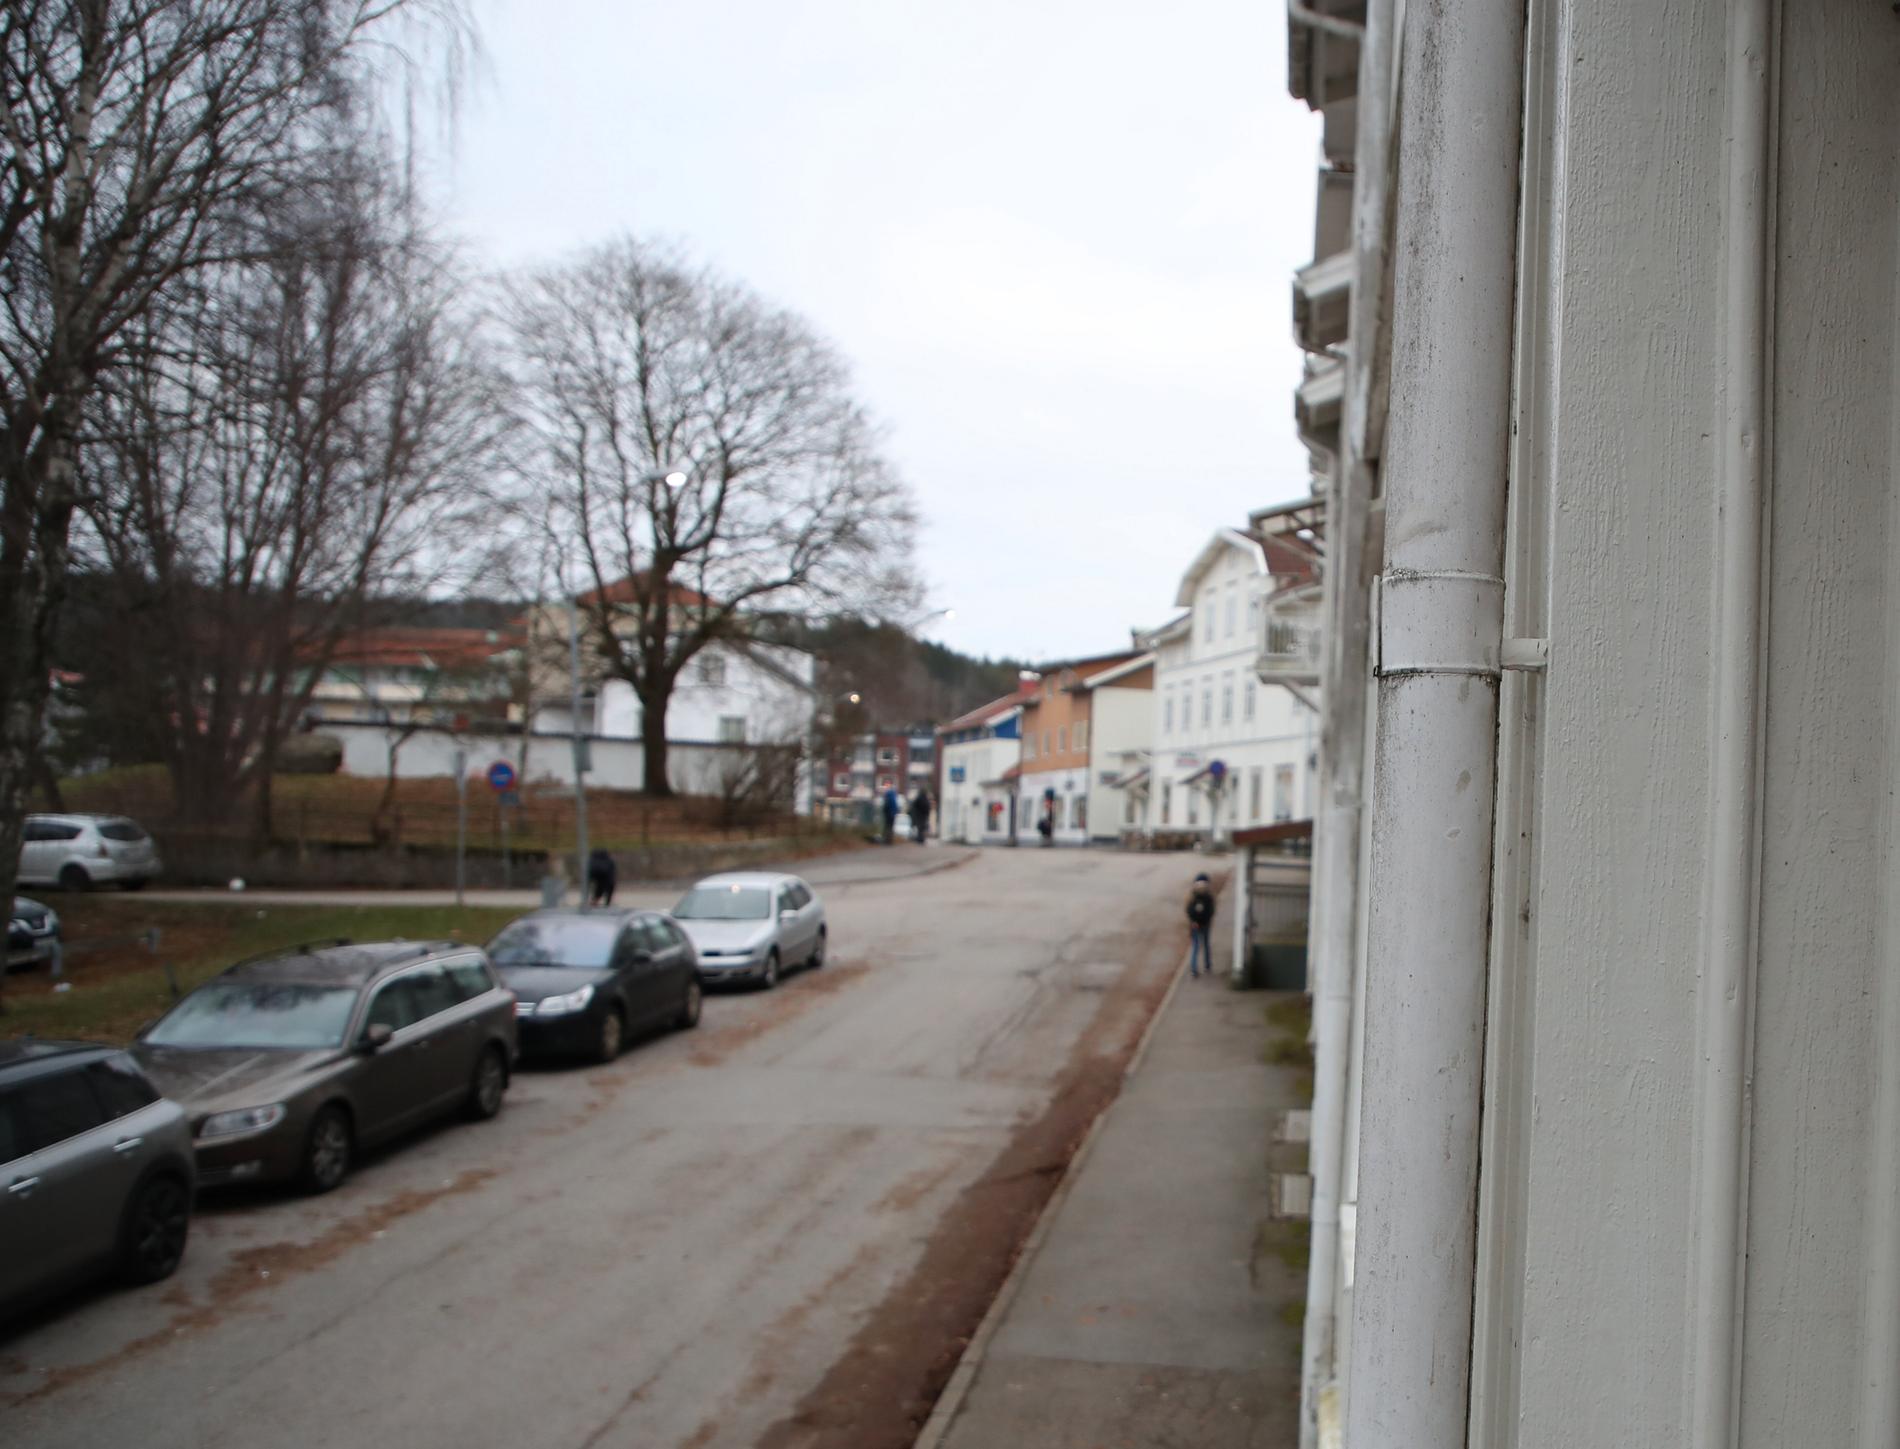 På torsdagsmorgonen gjorde Säkerhetspolisen insatser på flera platser i västra Sverige i samverkan med polisen och under ledning av Nationella operativa avdelningen (Noa). Ett av tillslagen gjordes i Lilla Edet.